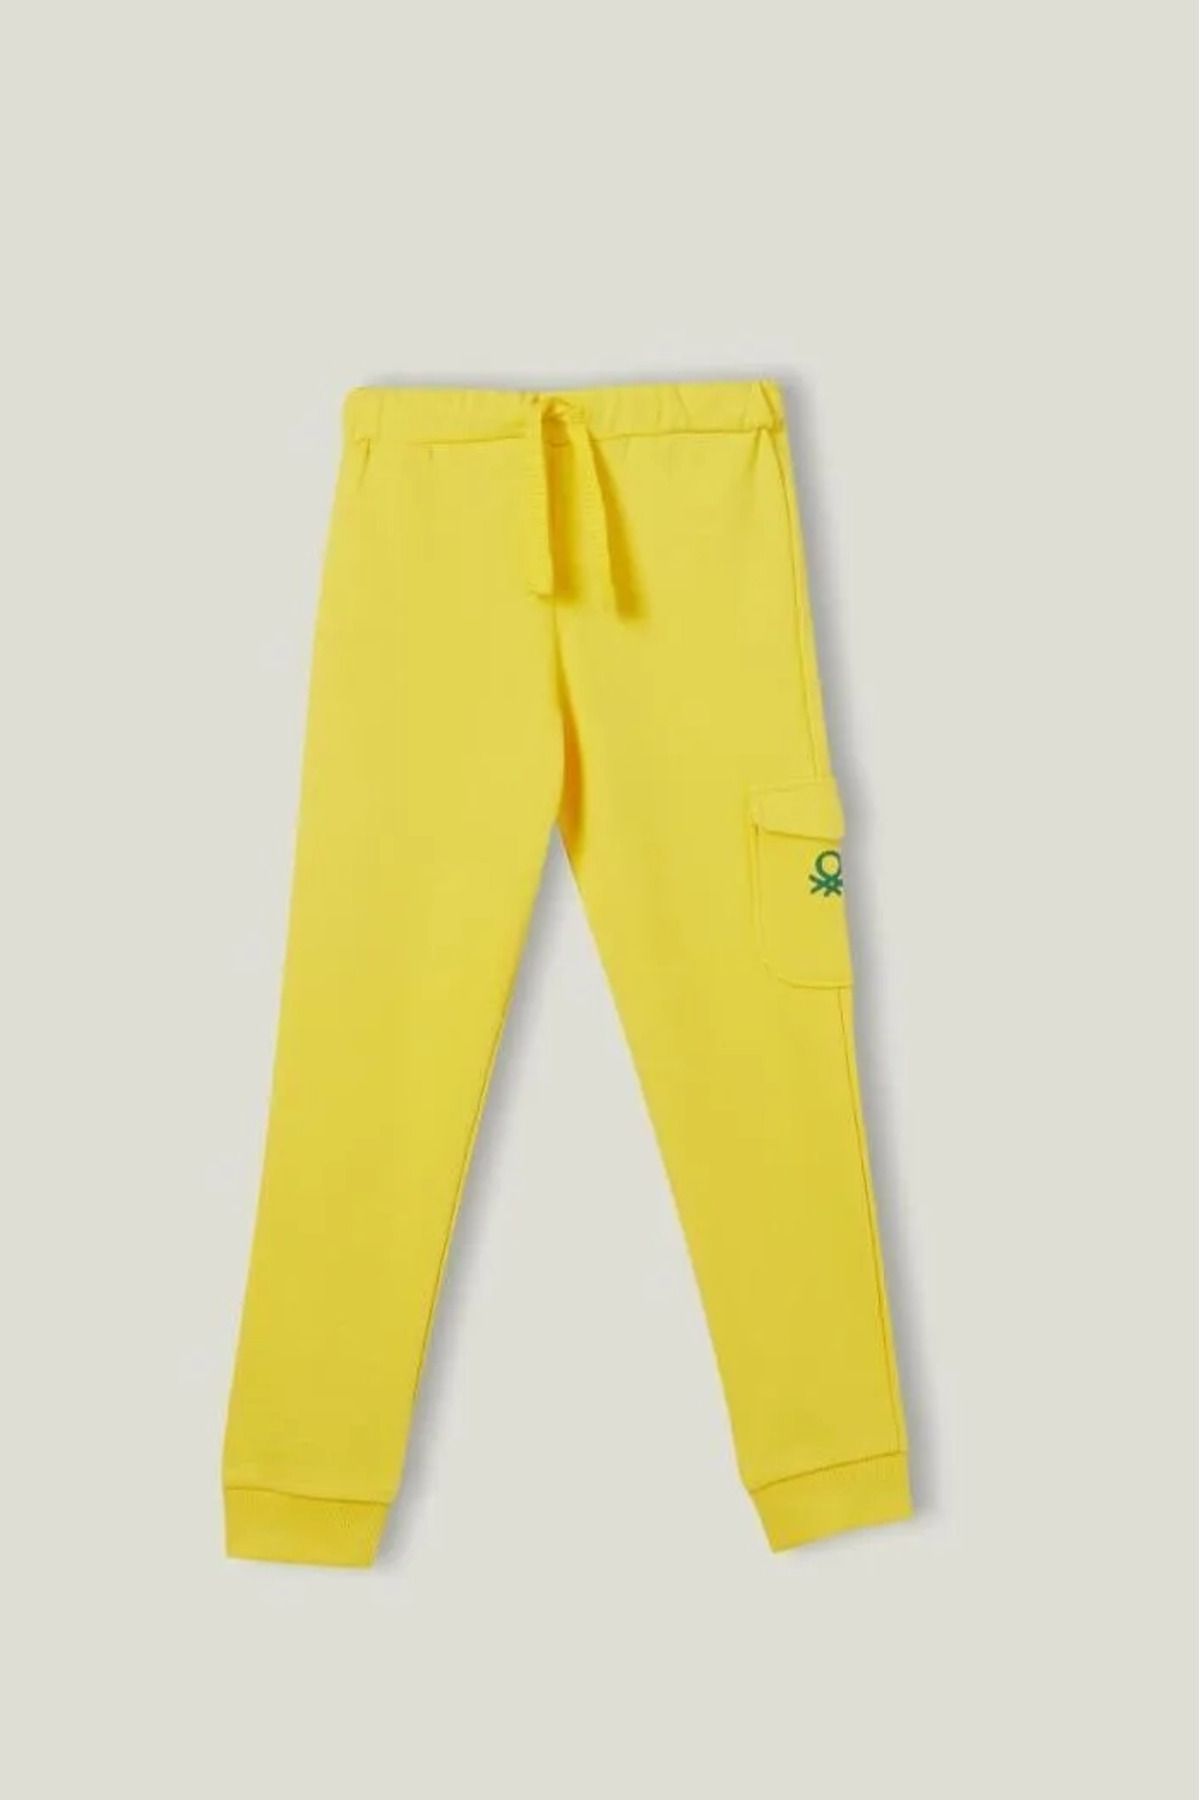 Benetton Kız Çocuk Pantolon - Sarı